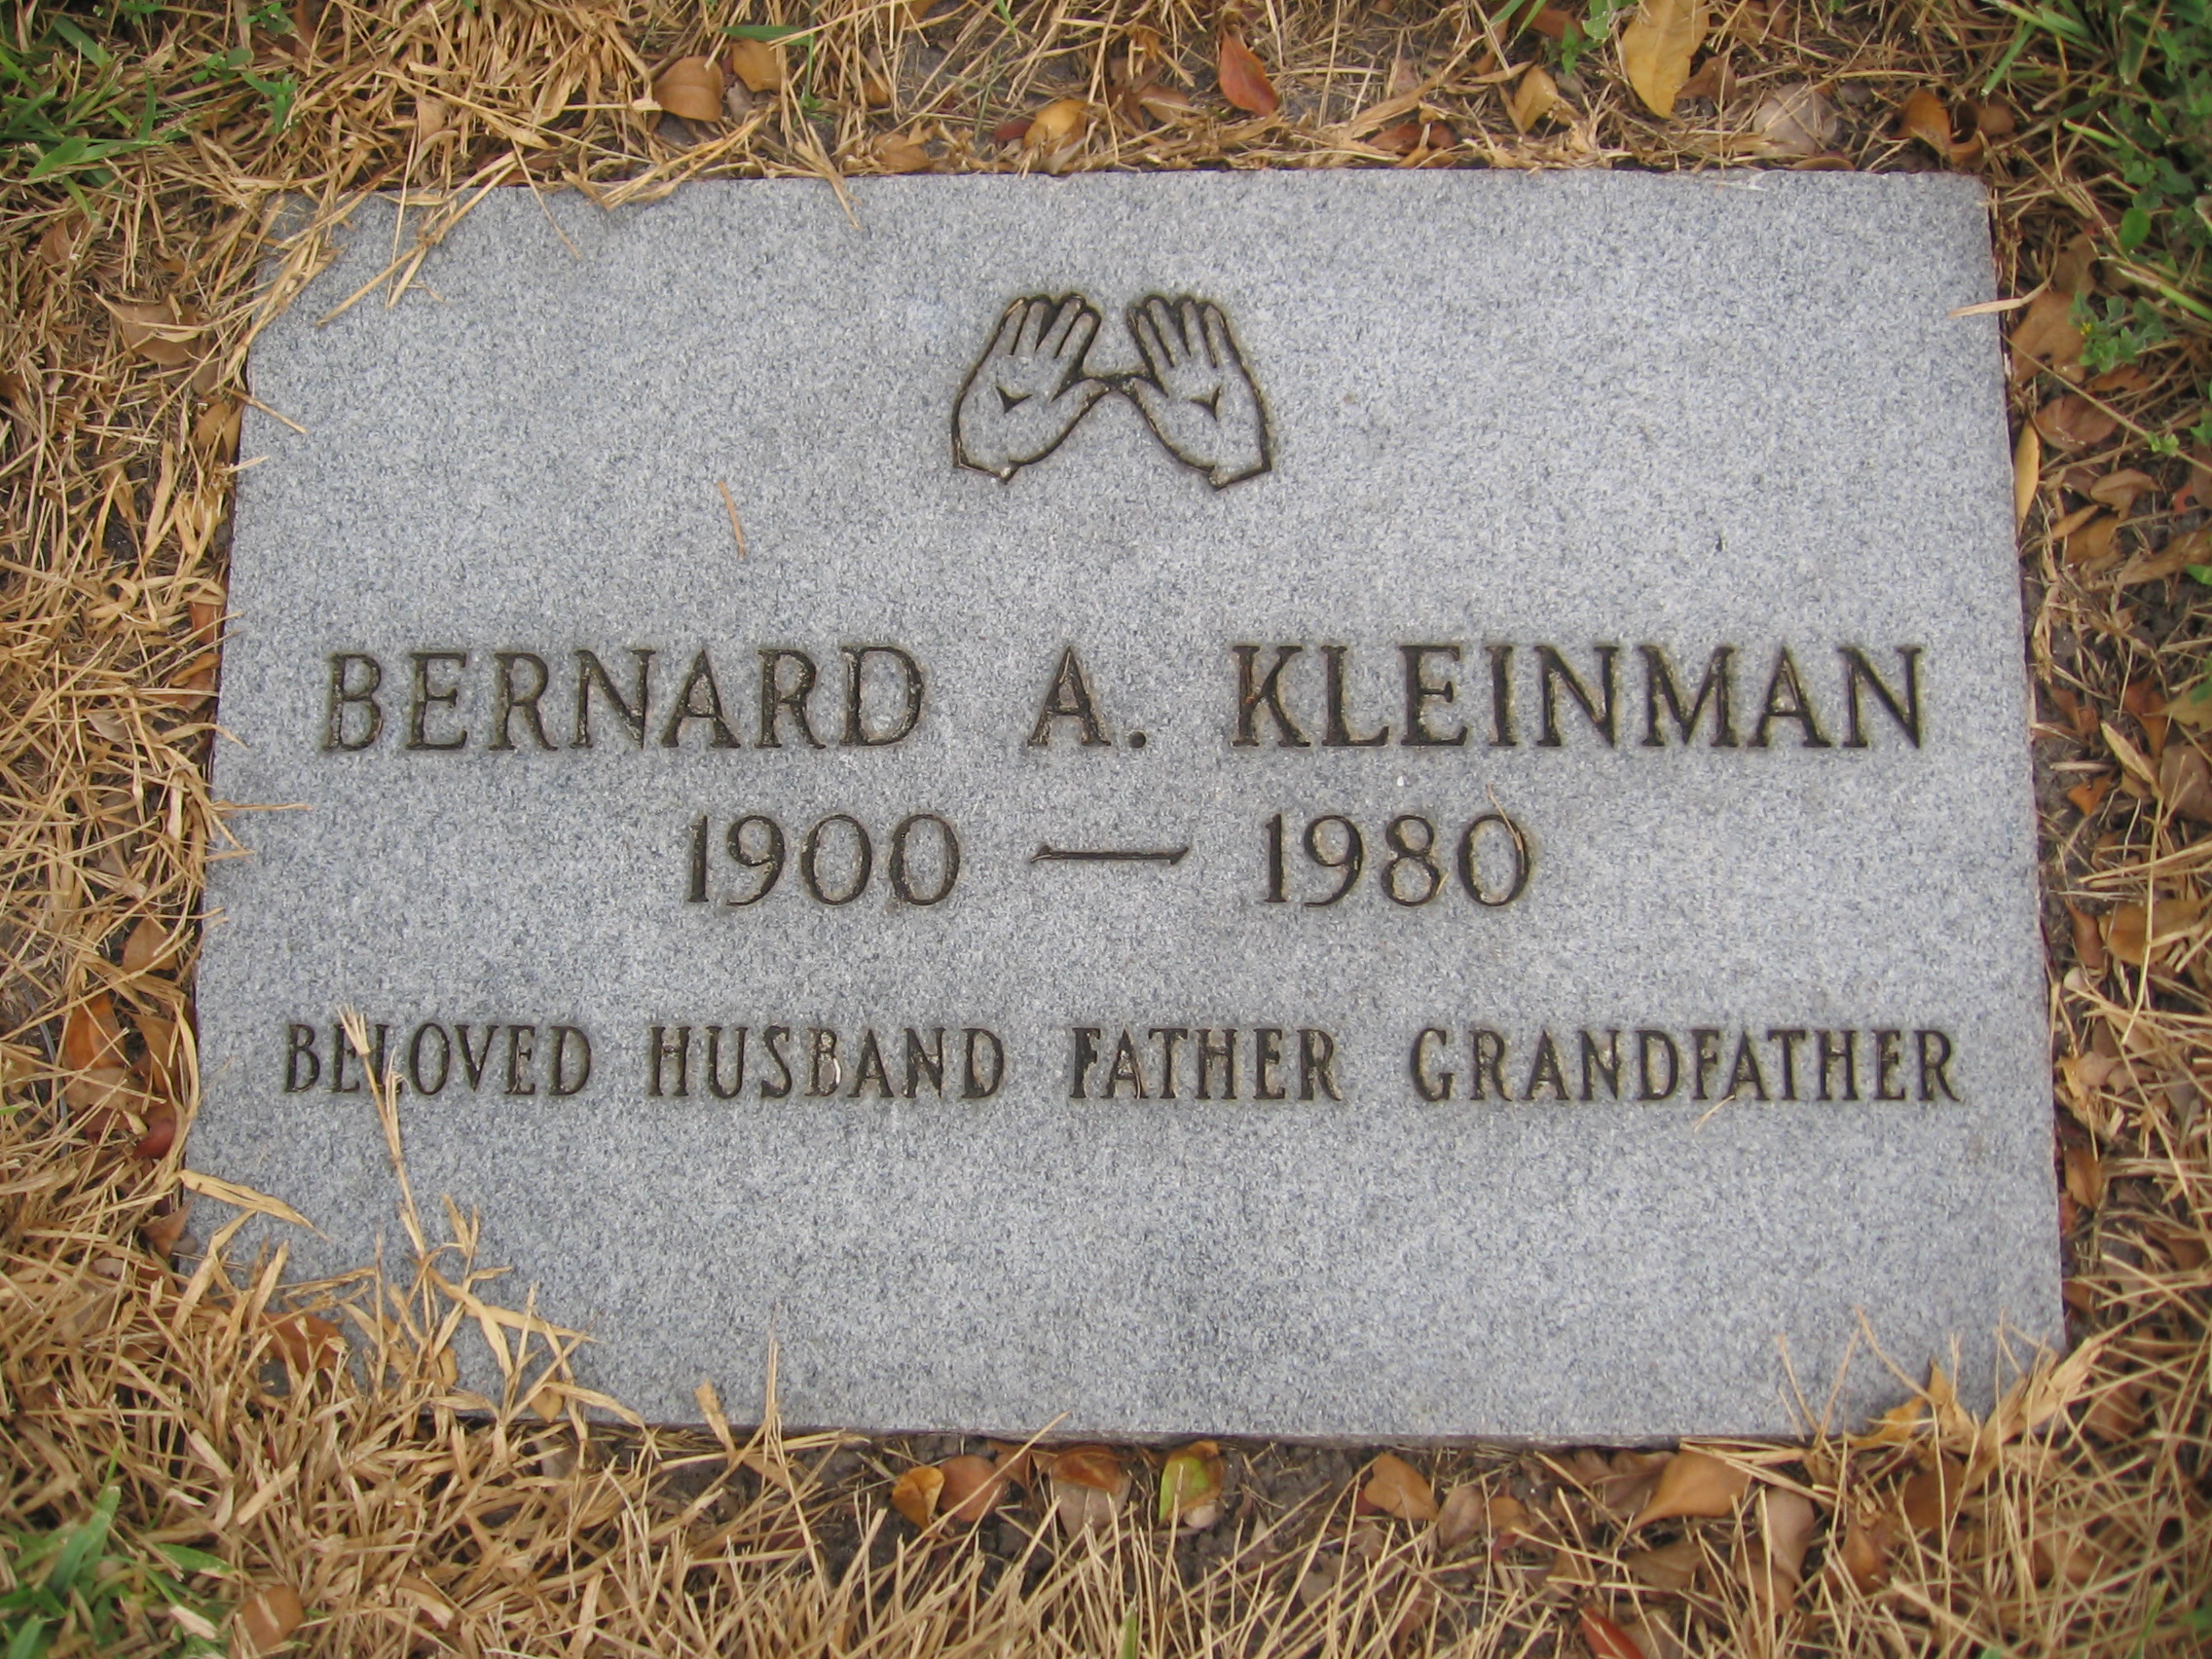 Bernard A Kleinman